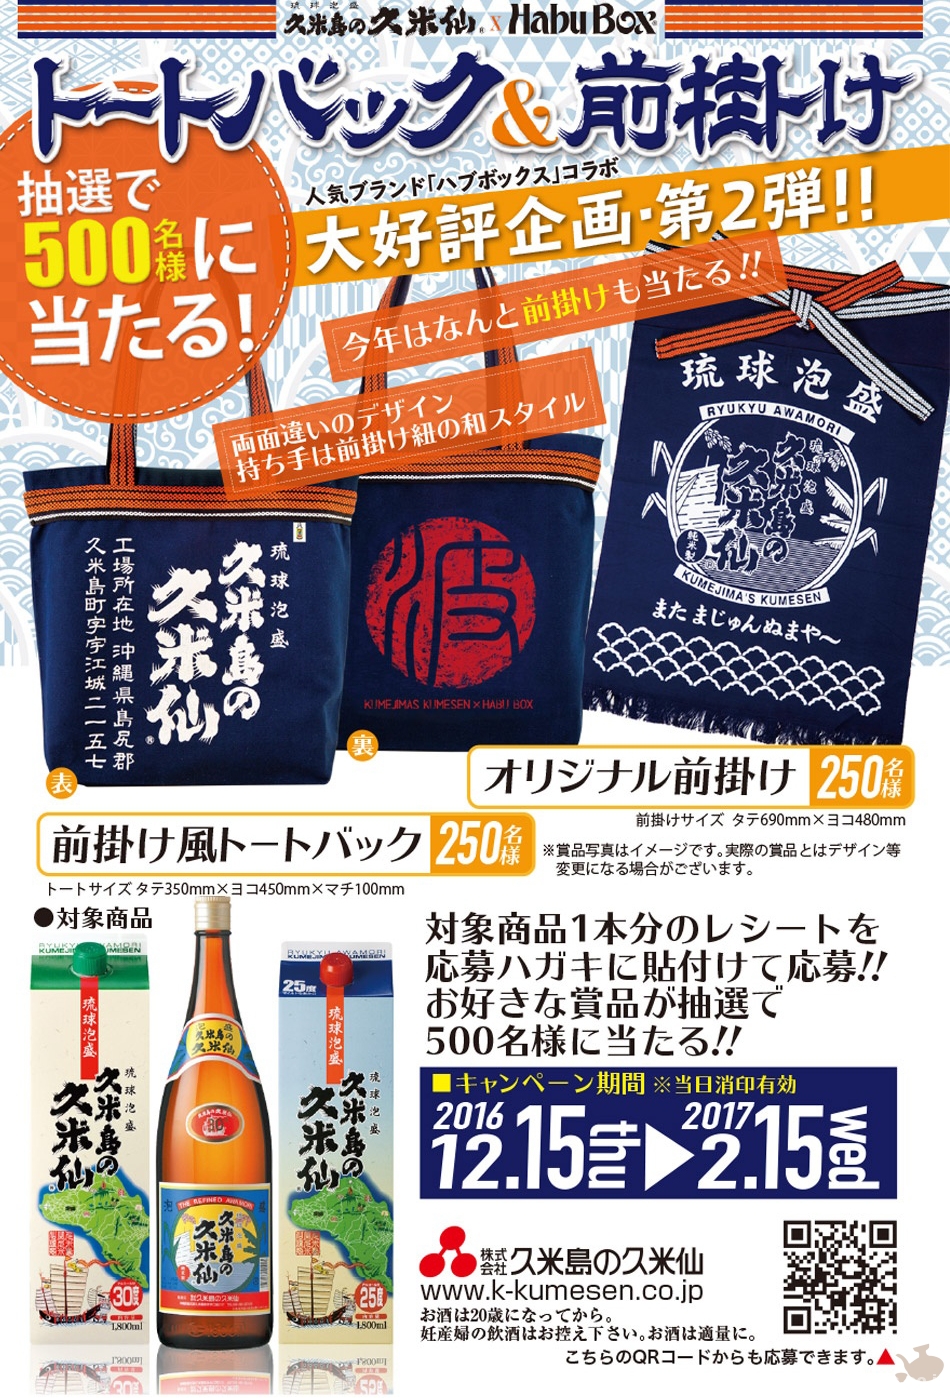 2016_12-15_campaign-info_habubox-collaboration_tote-bag_apron_kumejimano-kumesen01